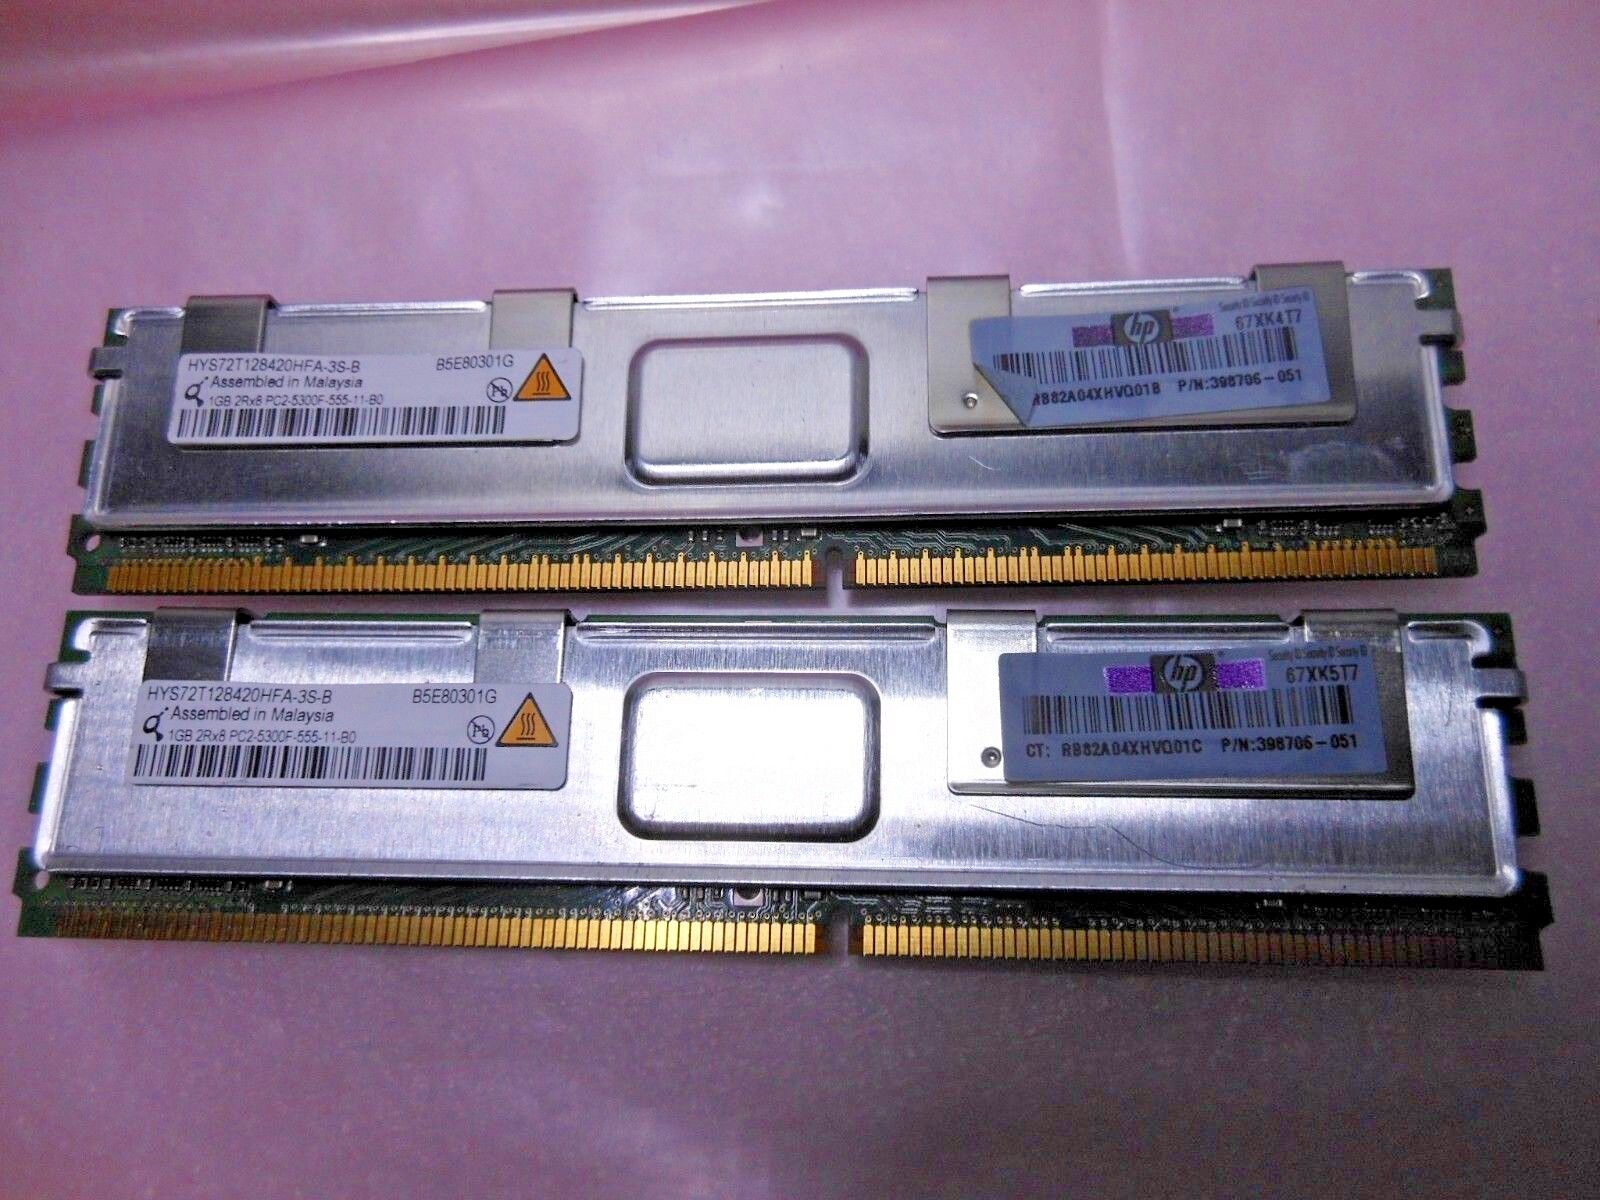 Lot of 2 Qimonda/HP 1Gb PC2-5300F DDR2-667 DIMM HYS72T128420HFA-3S-B/398706-051